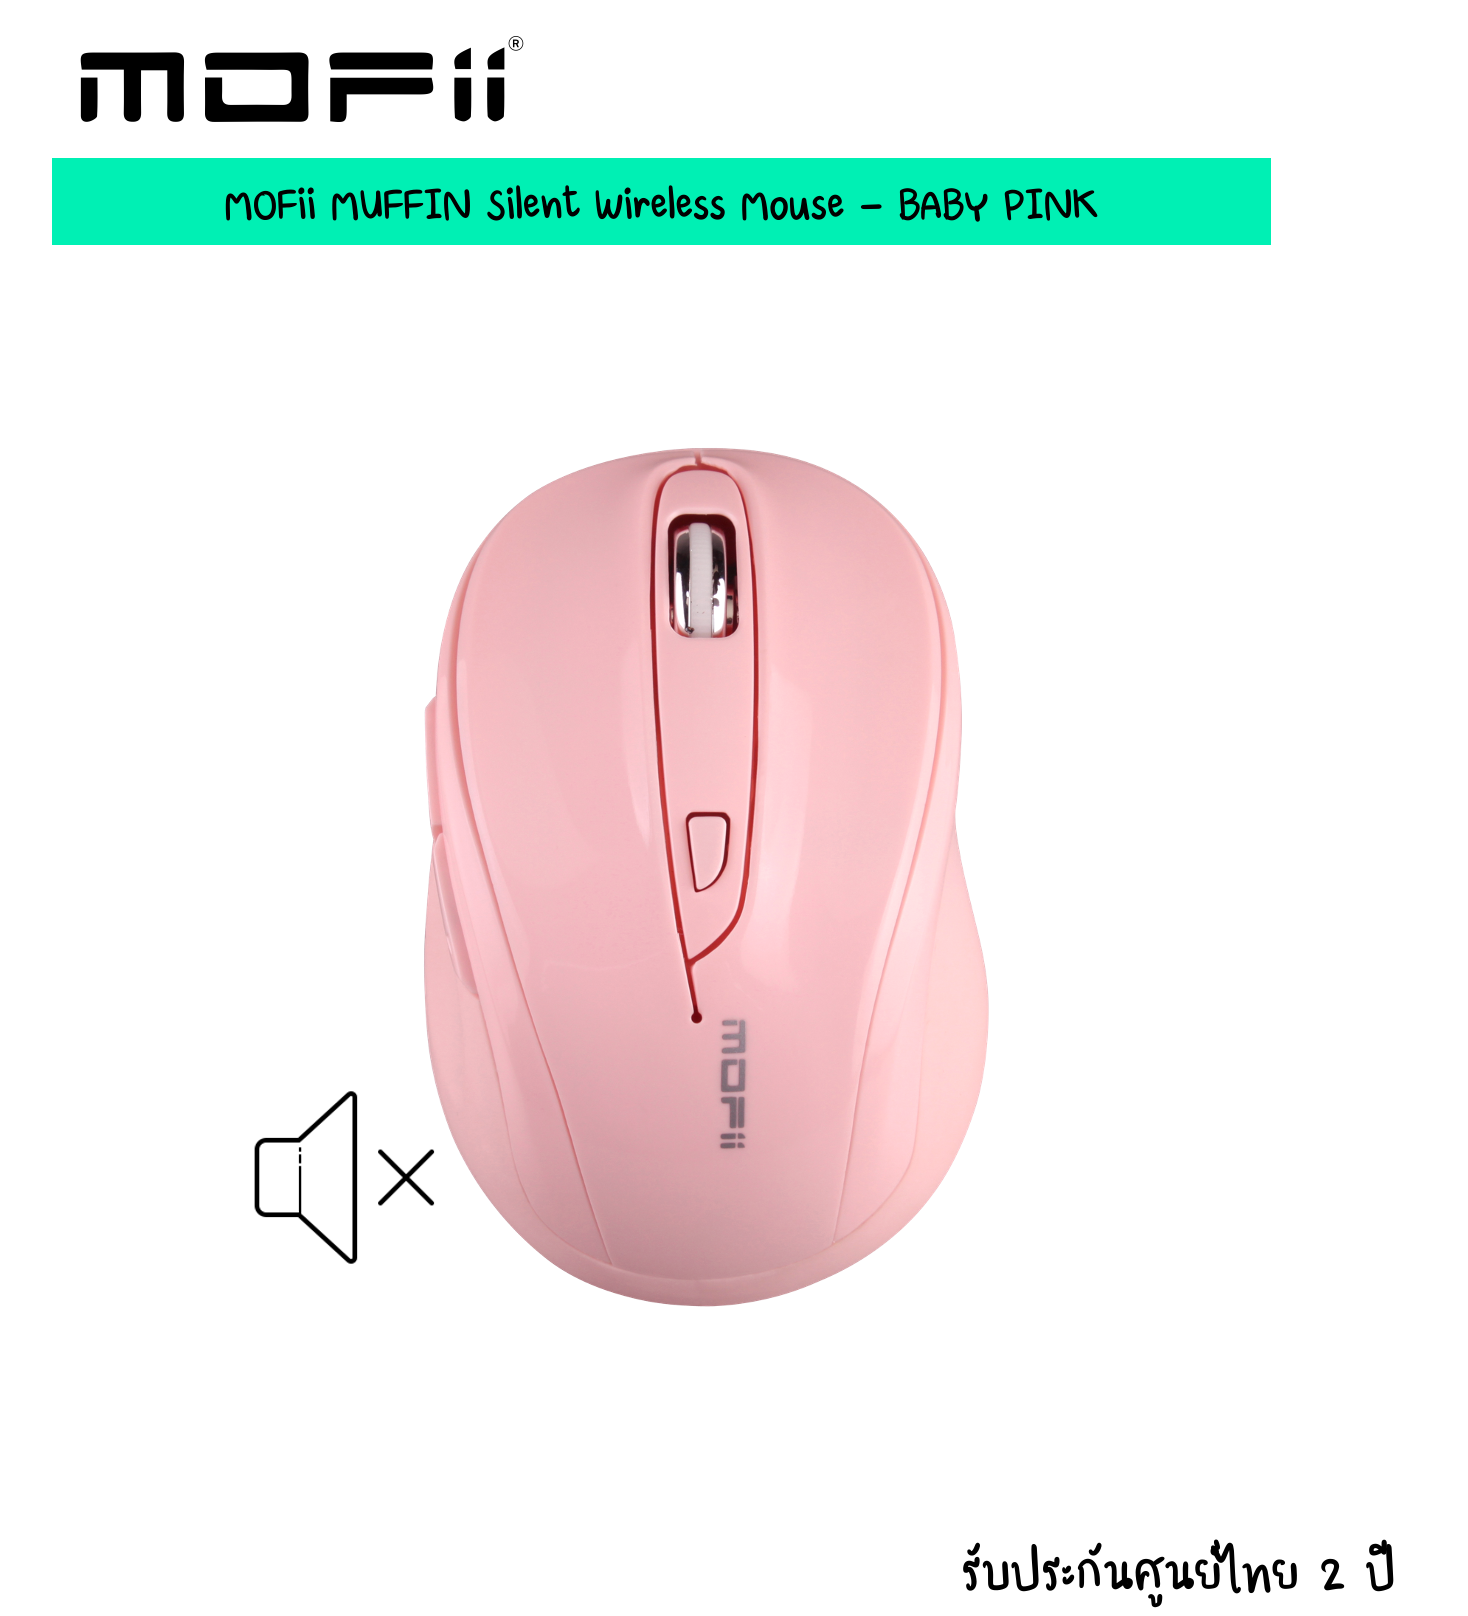 (แถมฟรี !! สติกเกอร์) (เม้าส์ไร้เสียง) MOFii MUFFIN Silent Wireless Mouse